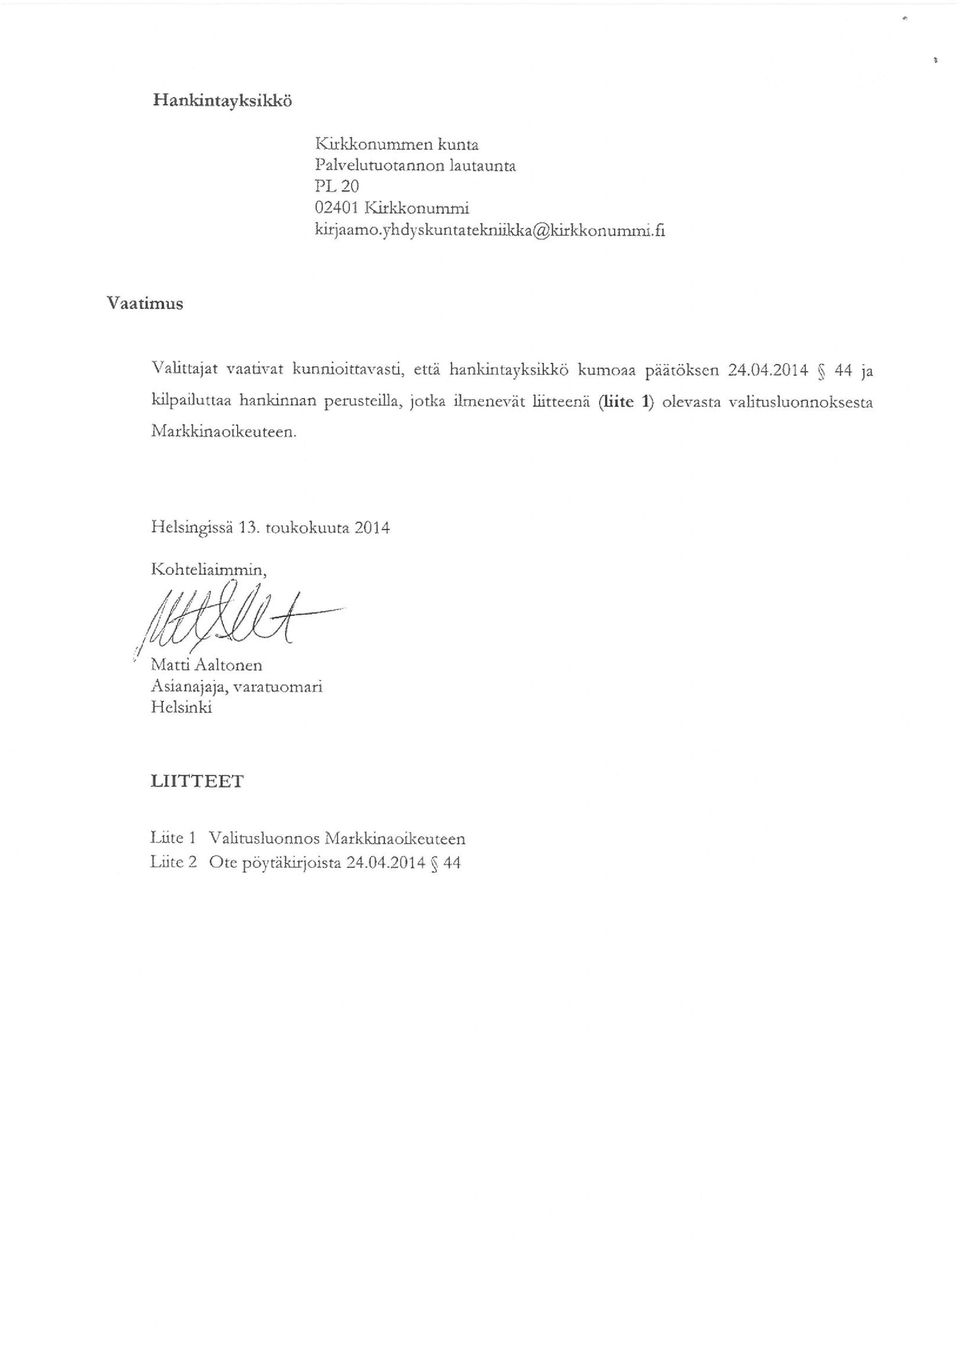 2014 44 ja kilpailuttaa hankinnan perusteilla, jotka ilmenevät liitteenä (liite l) olevasta valitusluonaoksesta Markkmaoikeuteen.